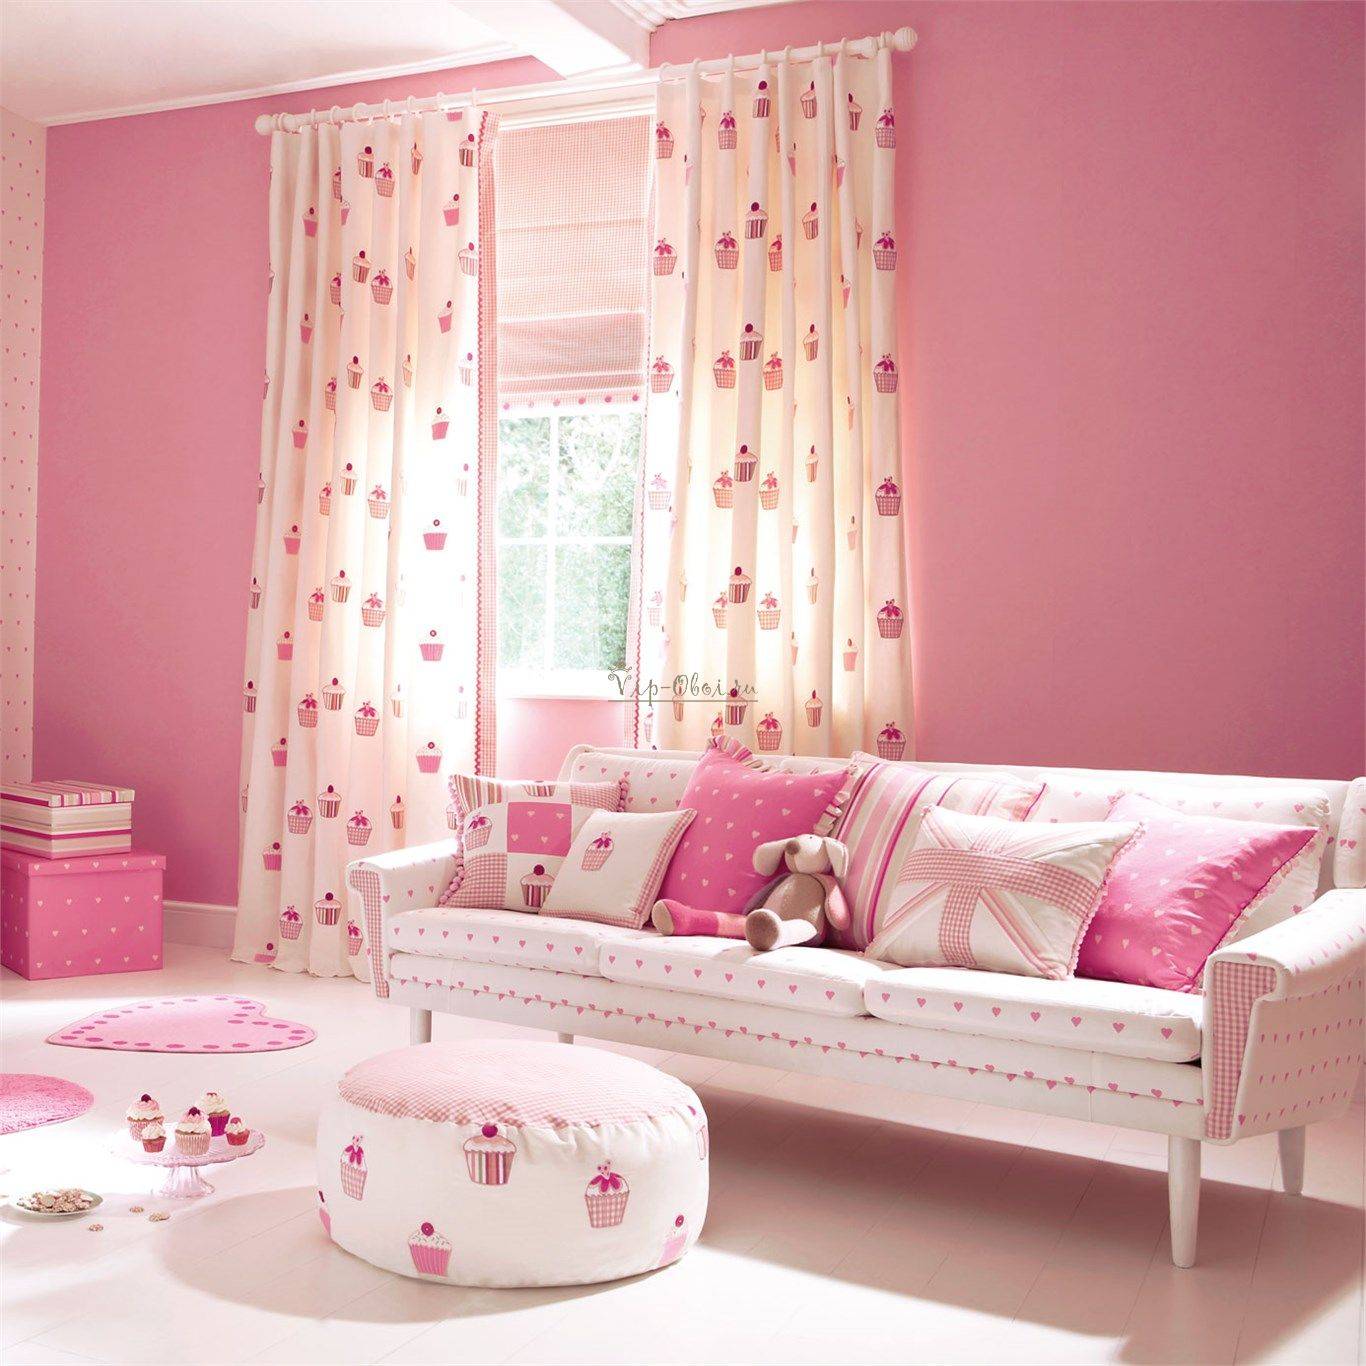 Как создать интерьер детской комнаты для девочки в розовых оттенках